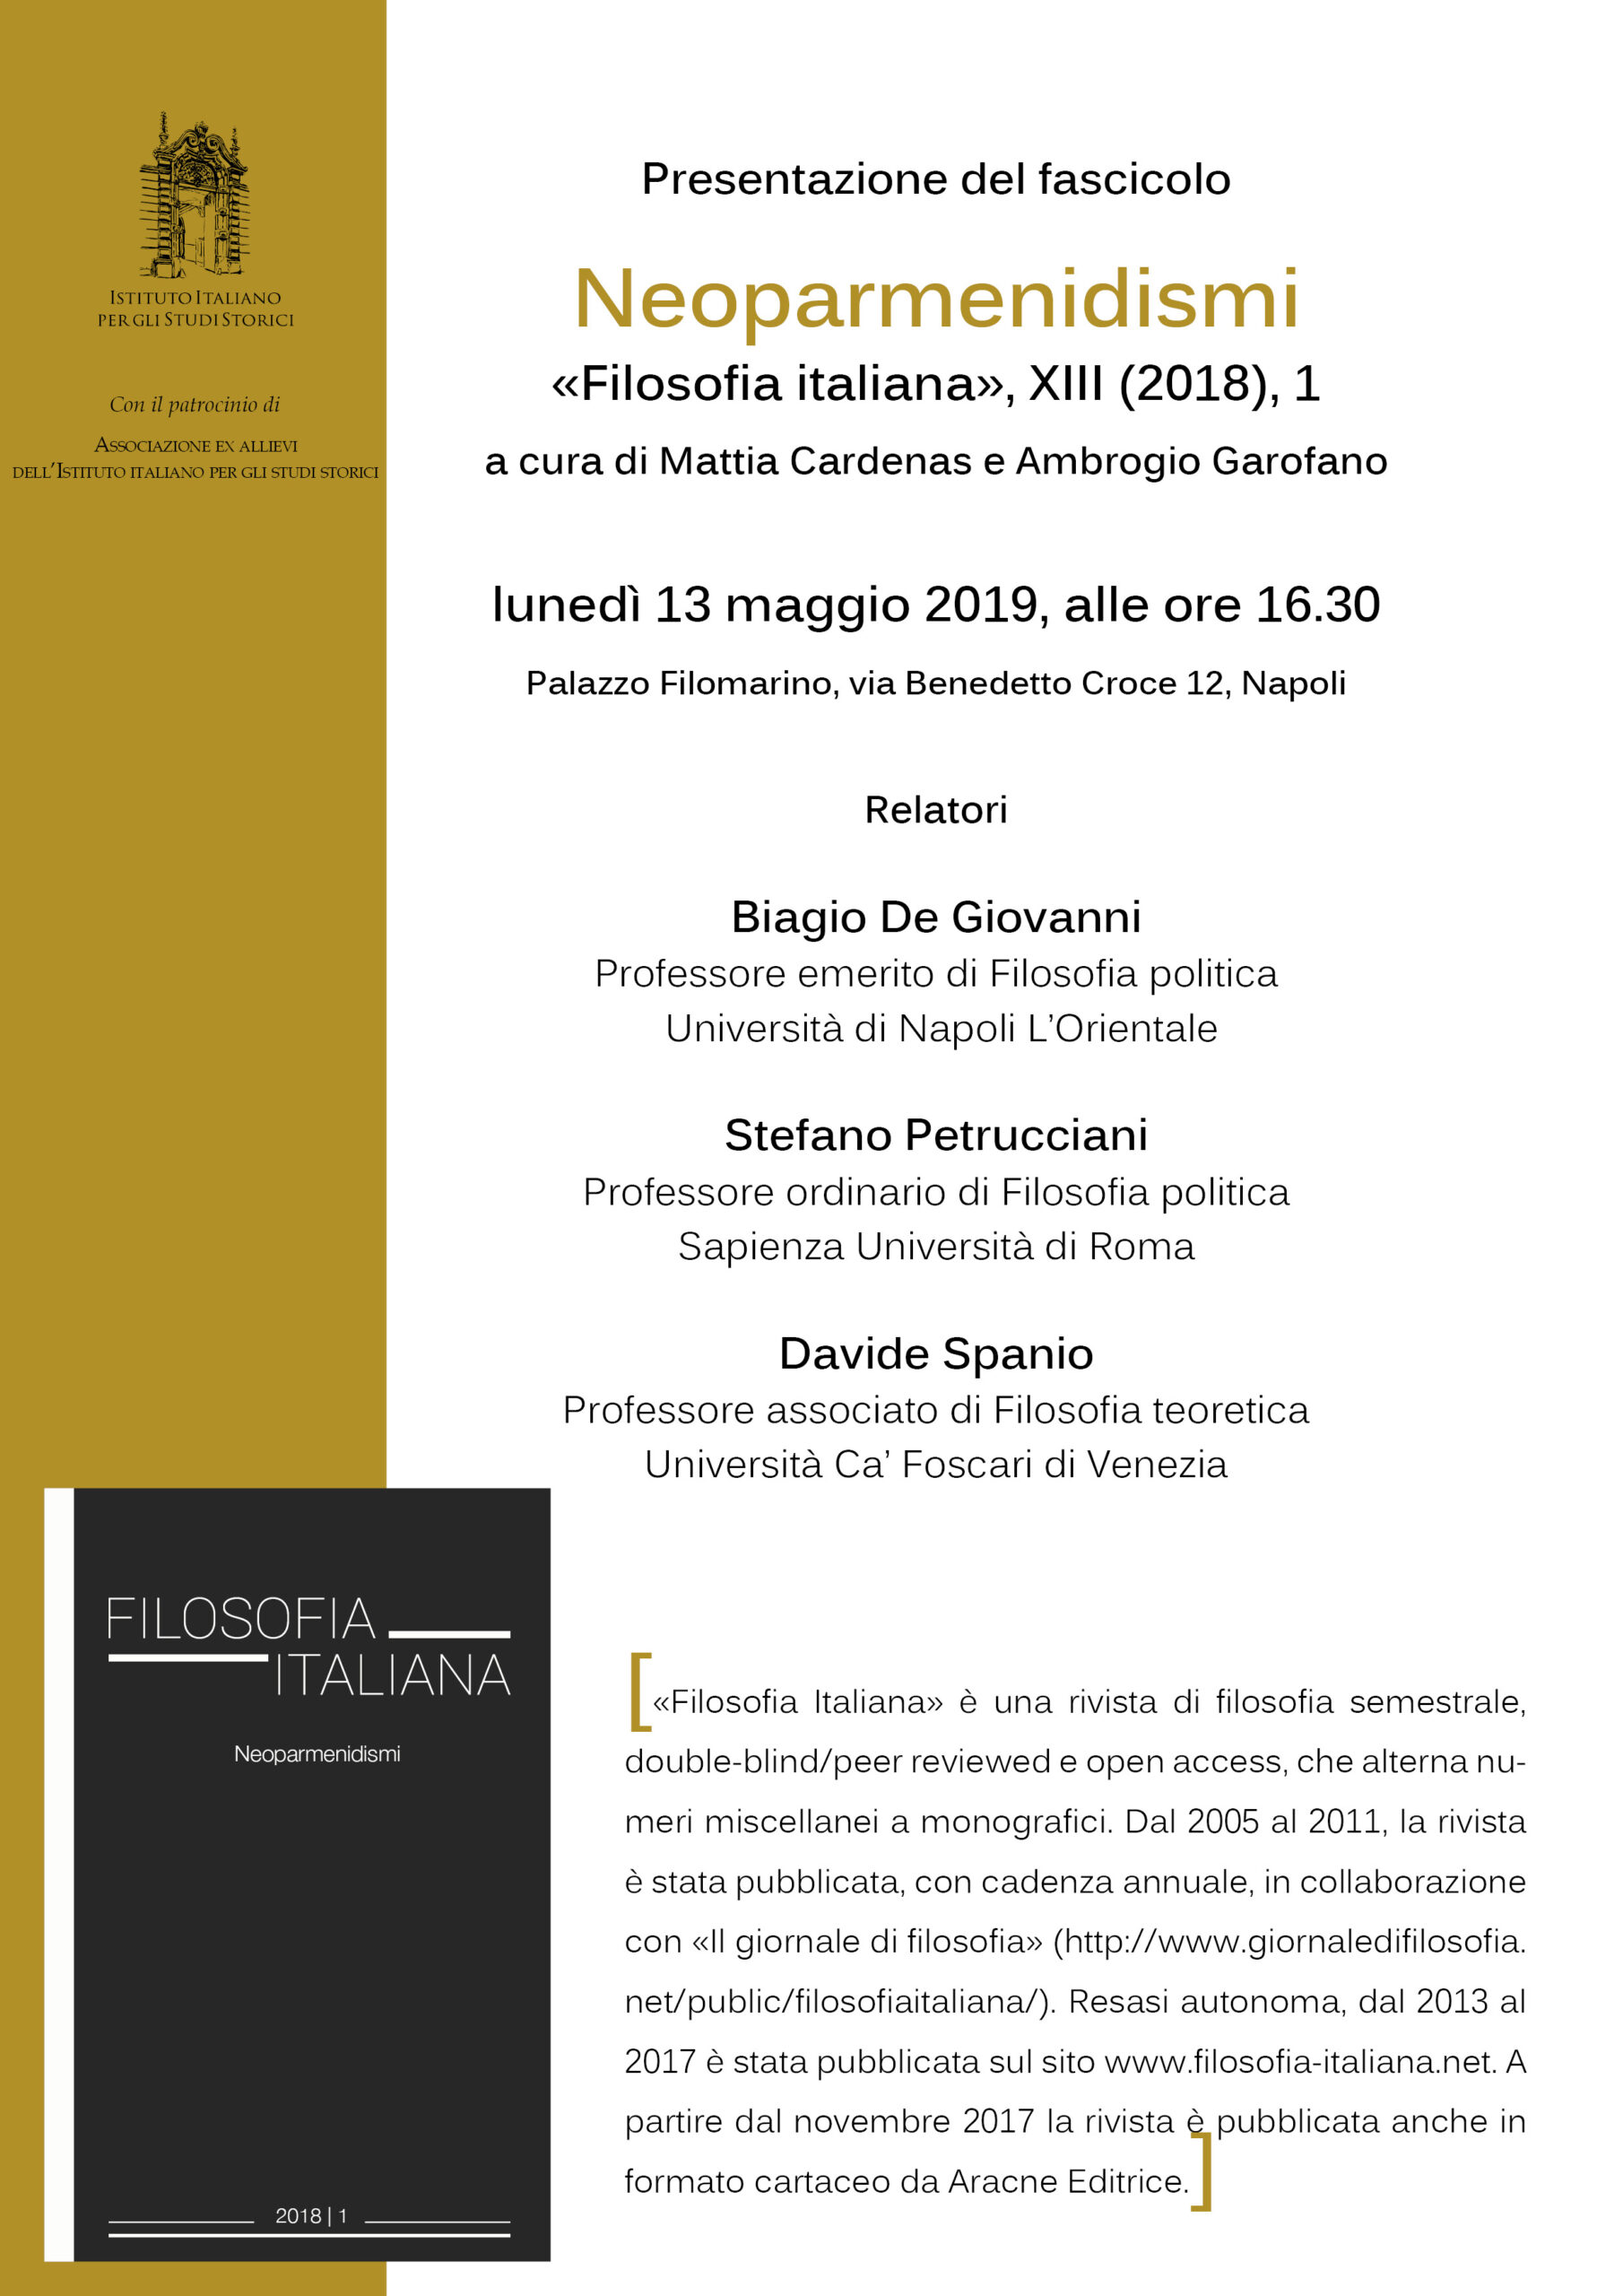 13 maggio 2019: De Giovanni, Petrucciani, Spanio presentano “Neoparmenidismi”, rivista Filosofia italiana xiii, 2018